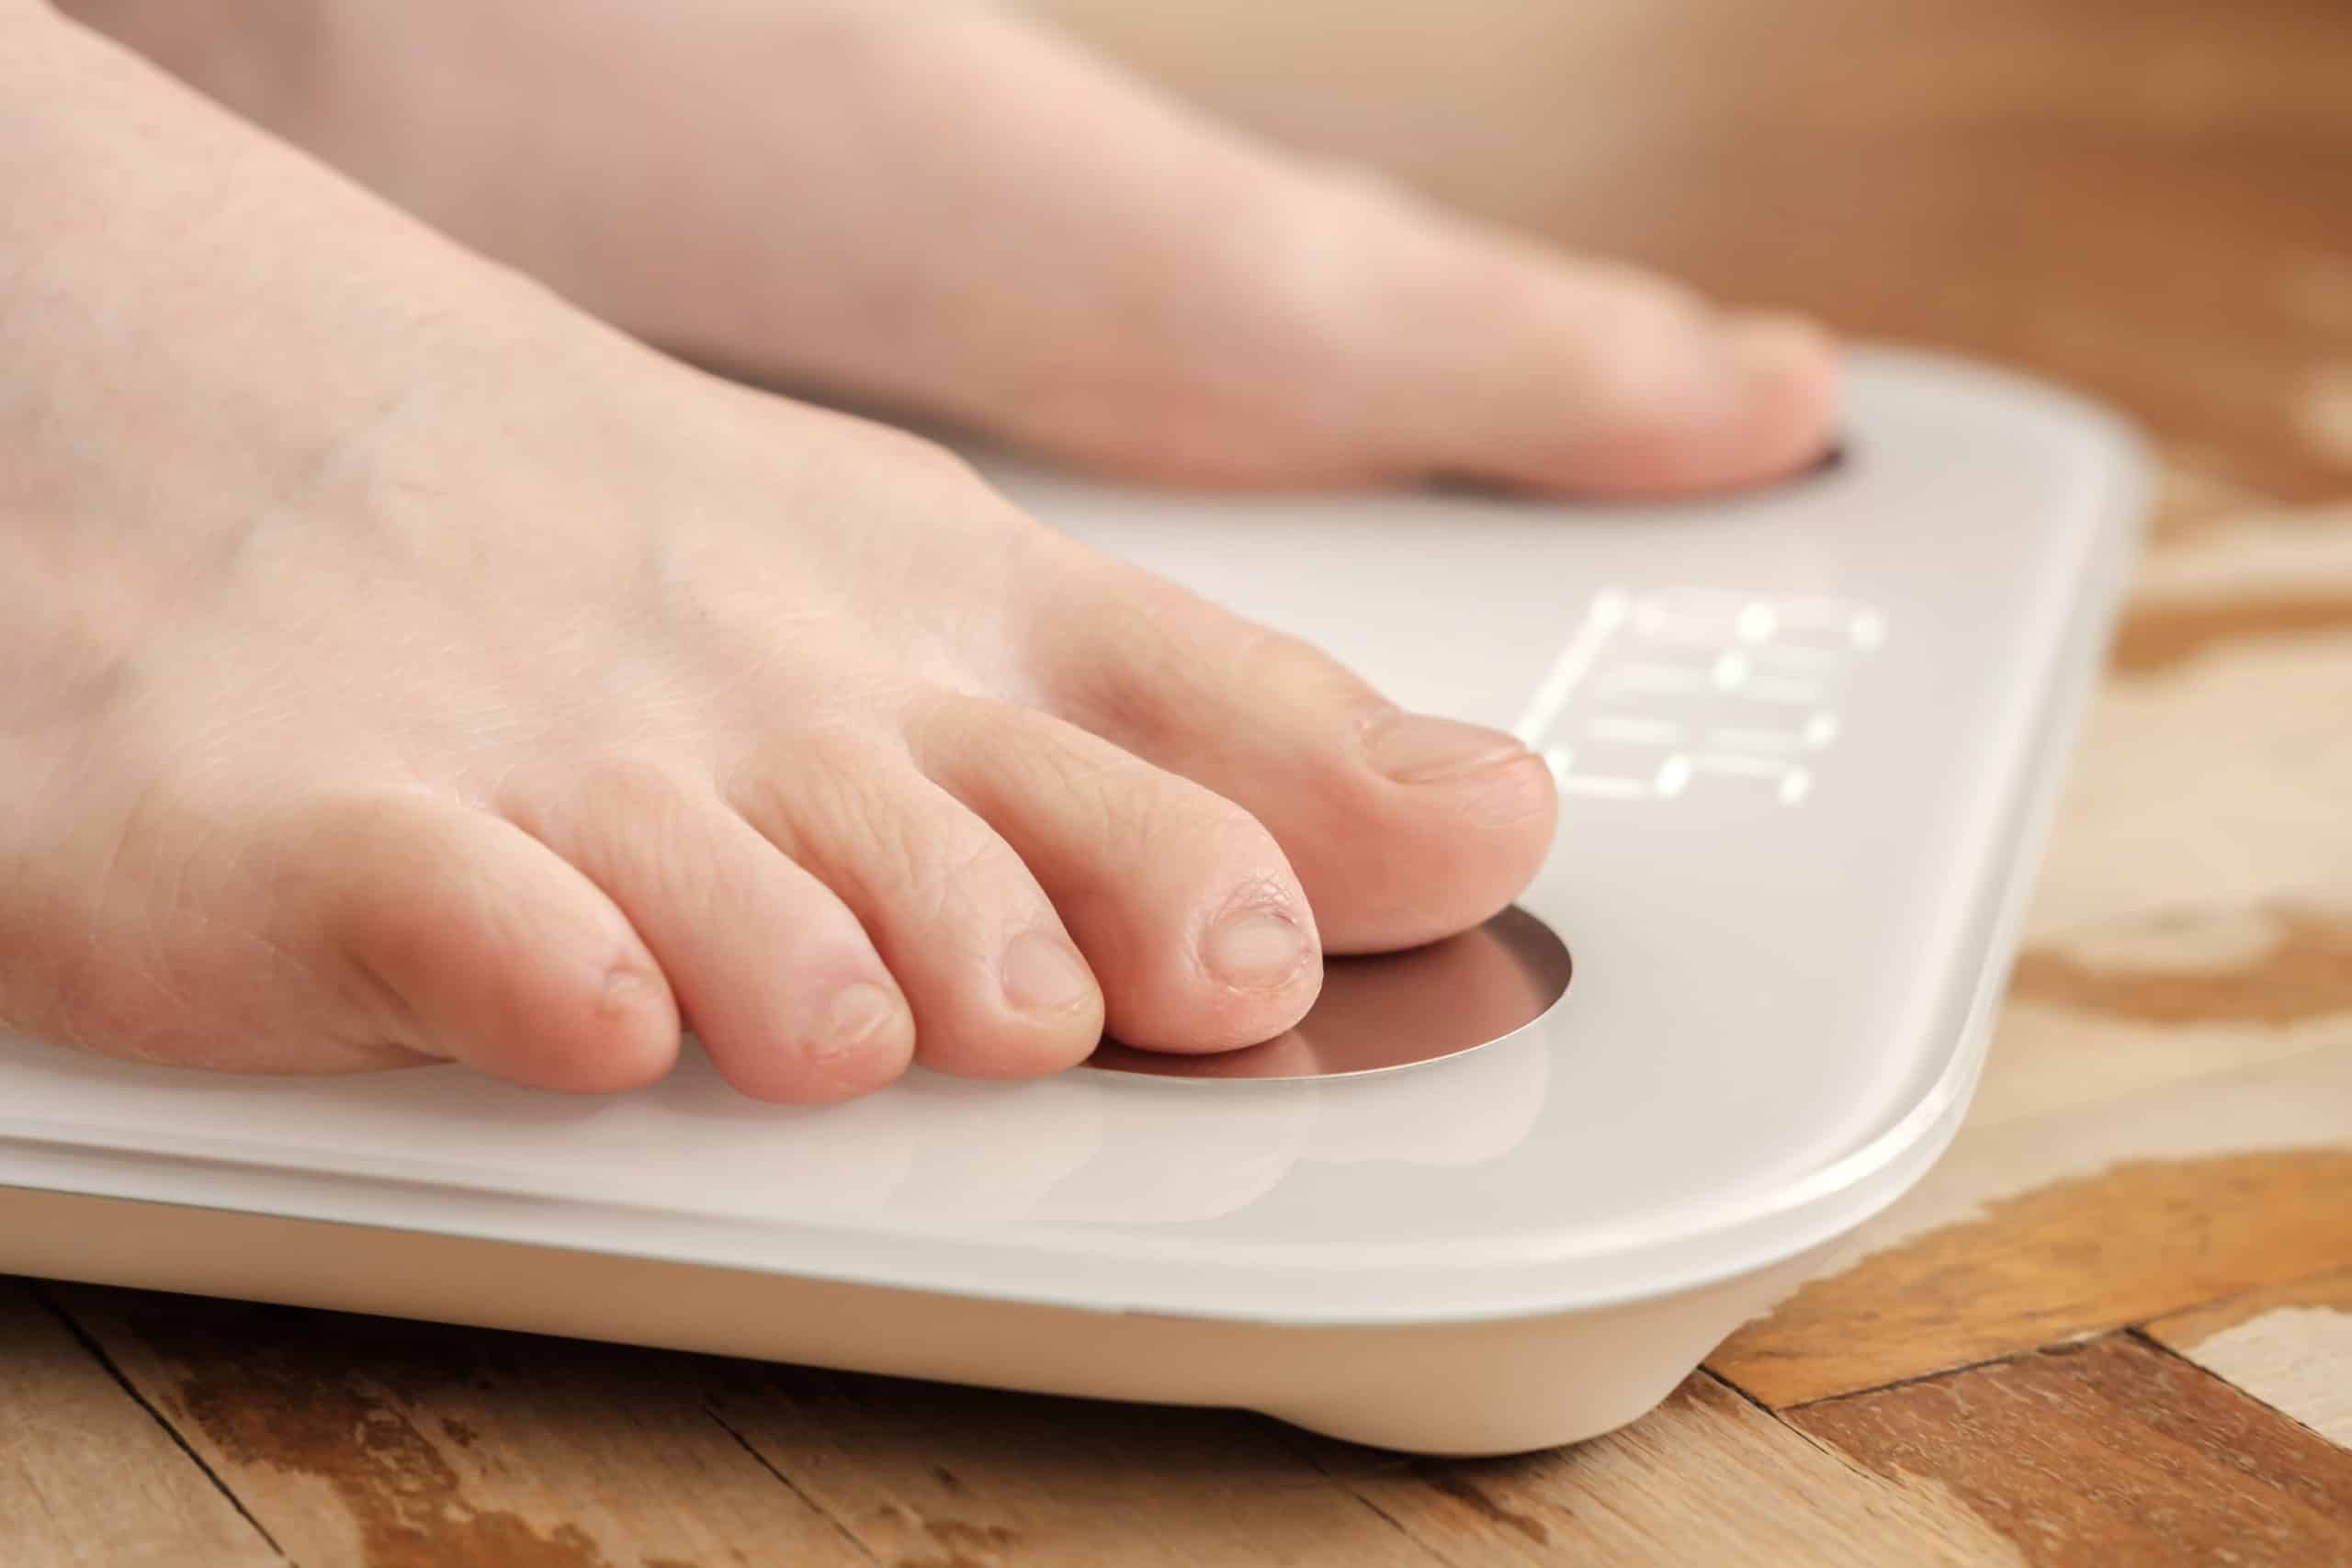 En sund vægt – find den ideelle vægt for dig